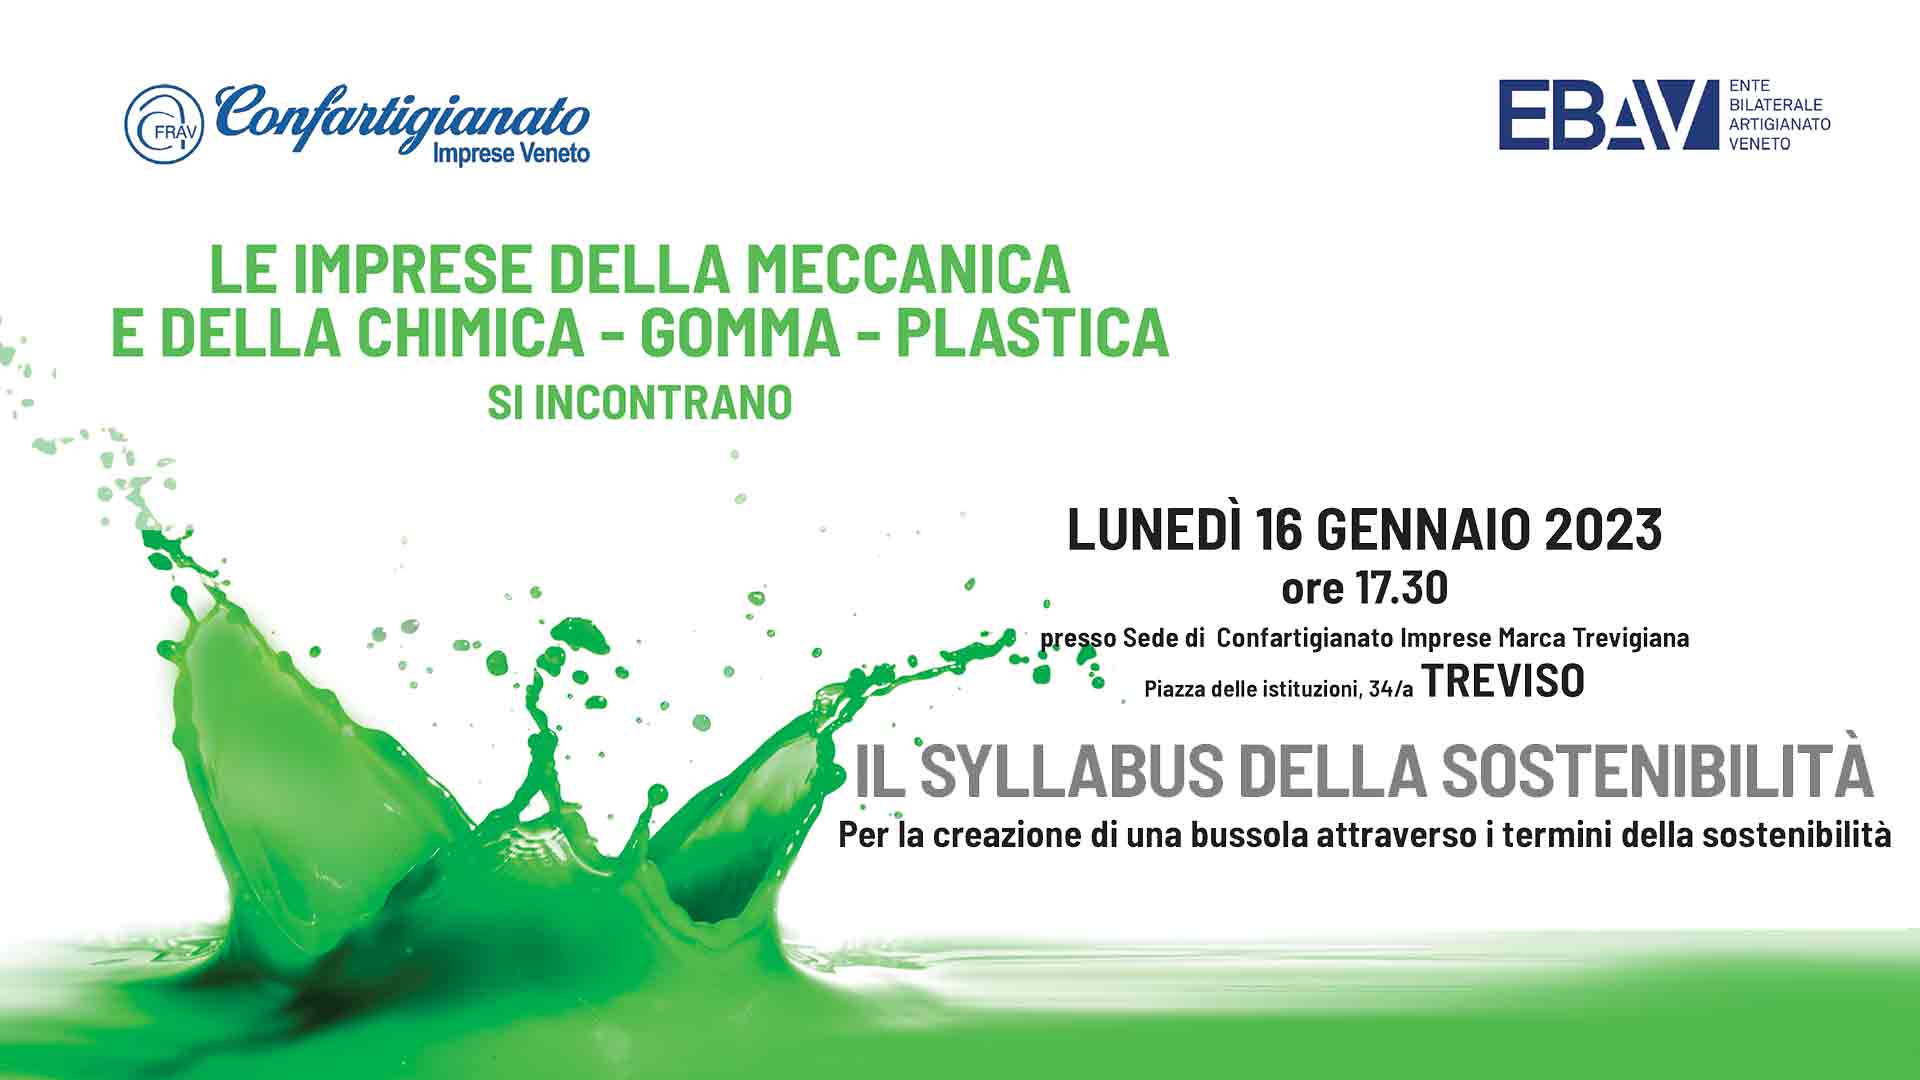 CHIMICA GOMMA PLASTICA – Ciclo regionale di incontri informativi. Il 16 gennaio, a Treviso, appuntamento sul tema "I rifiuti: da problema ad opportunità"